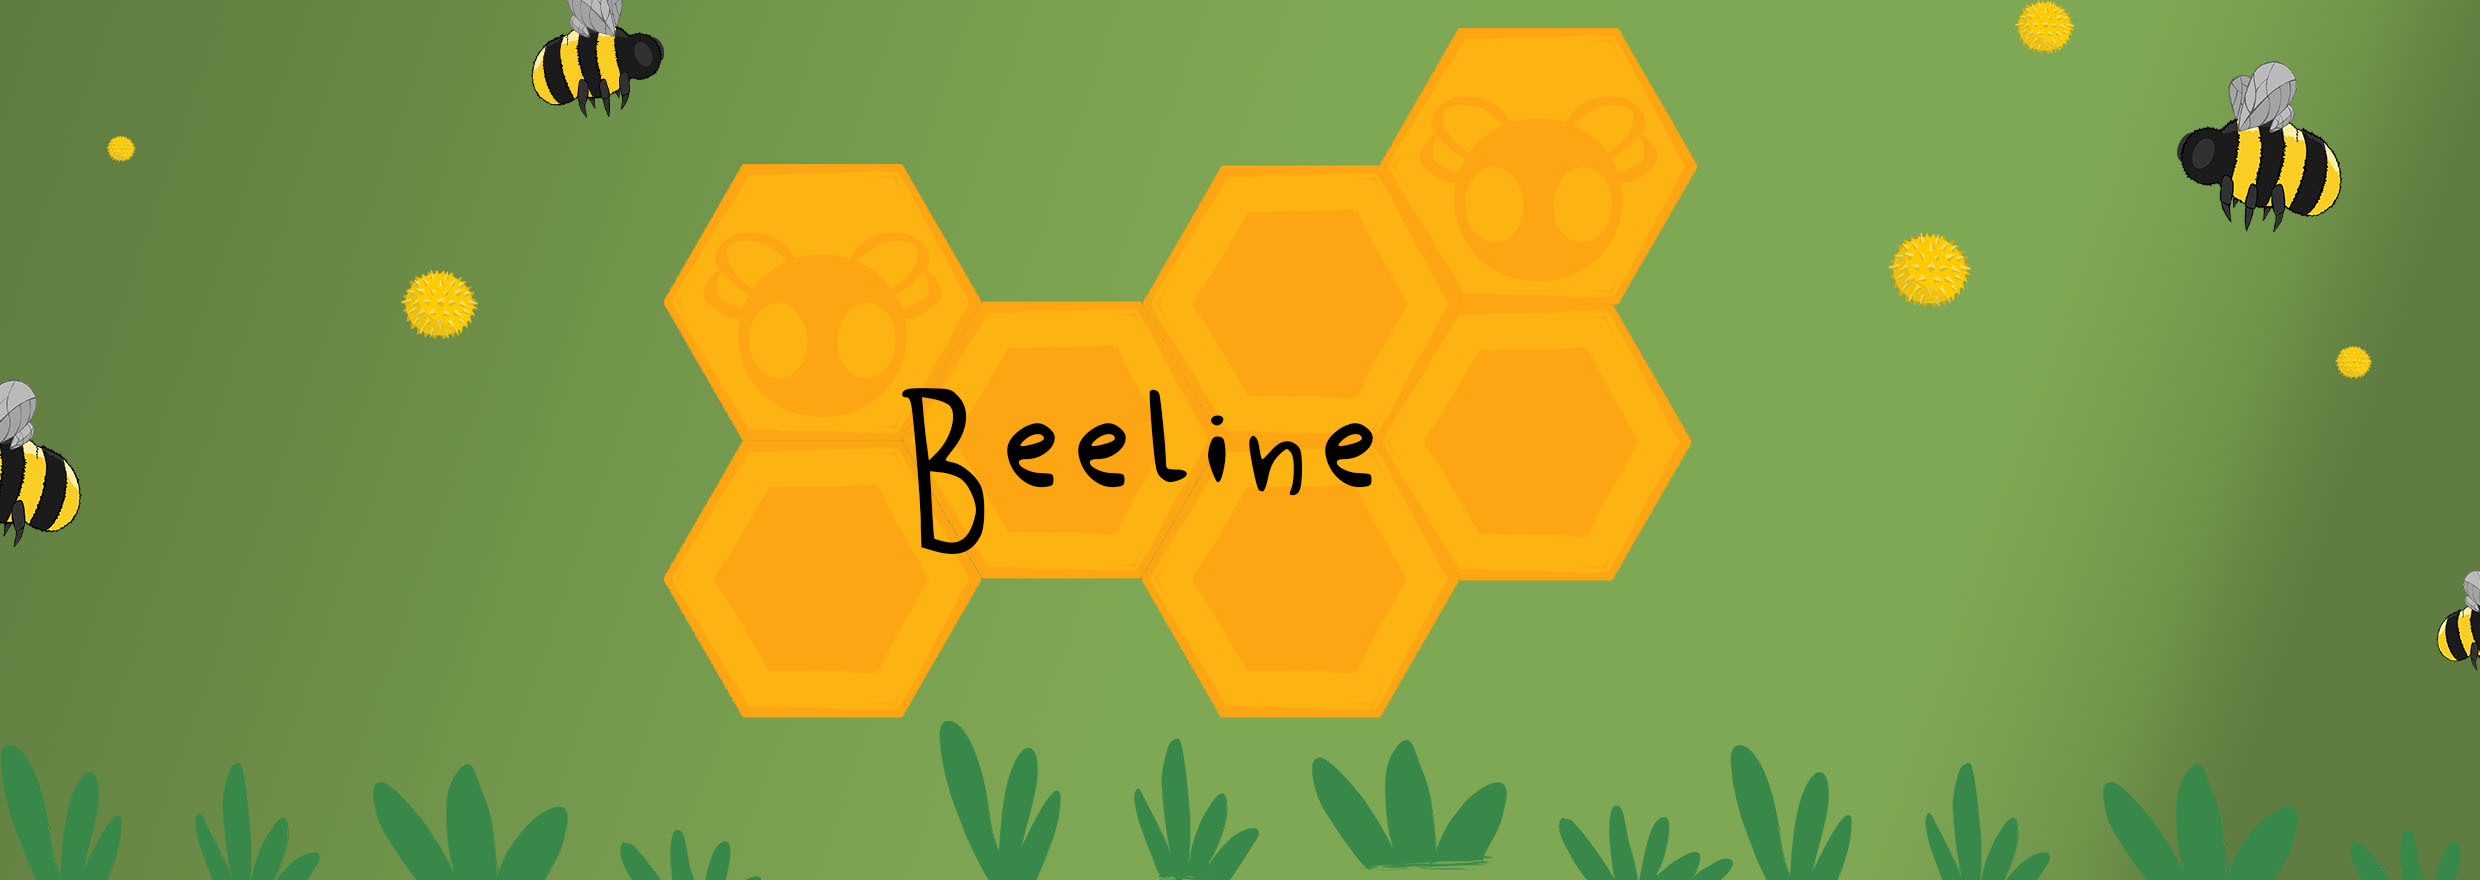 Beeline: A pollinating adventure!